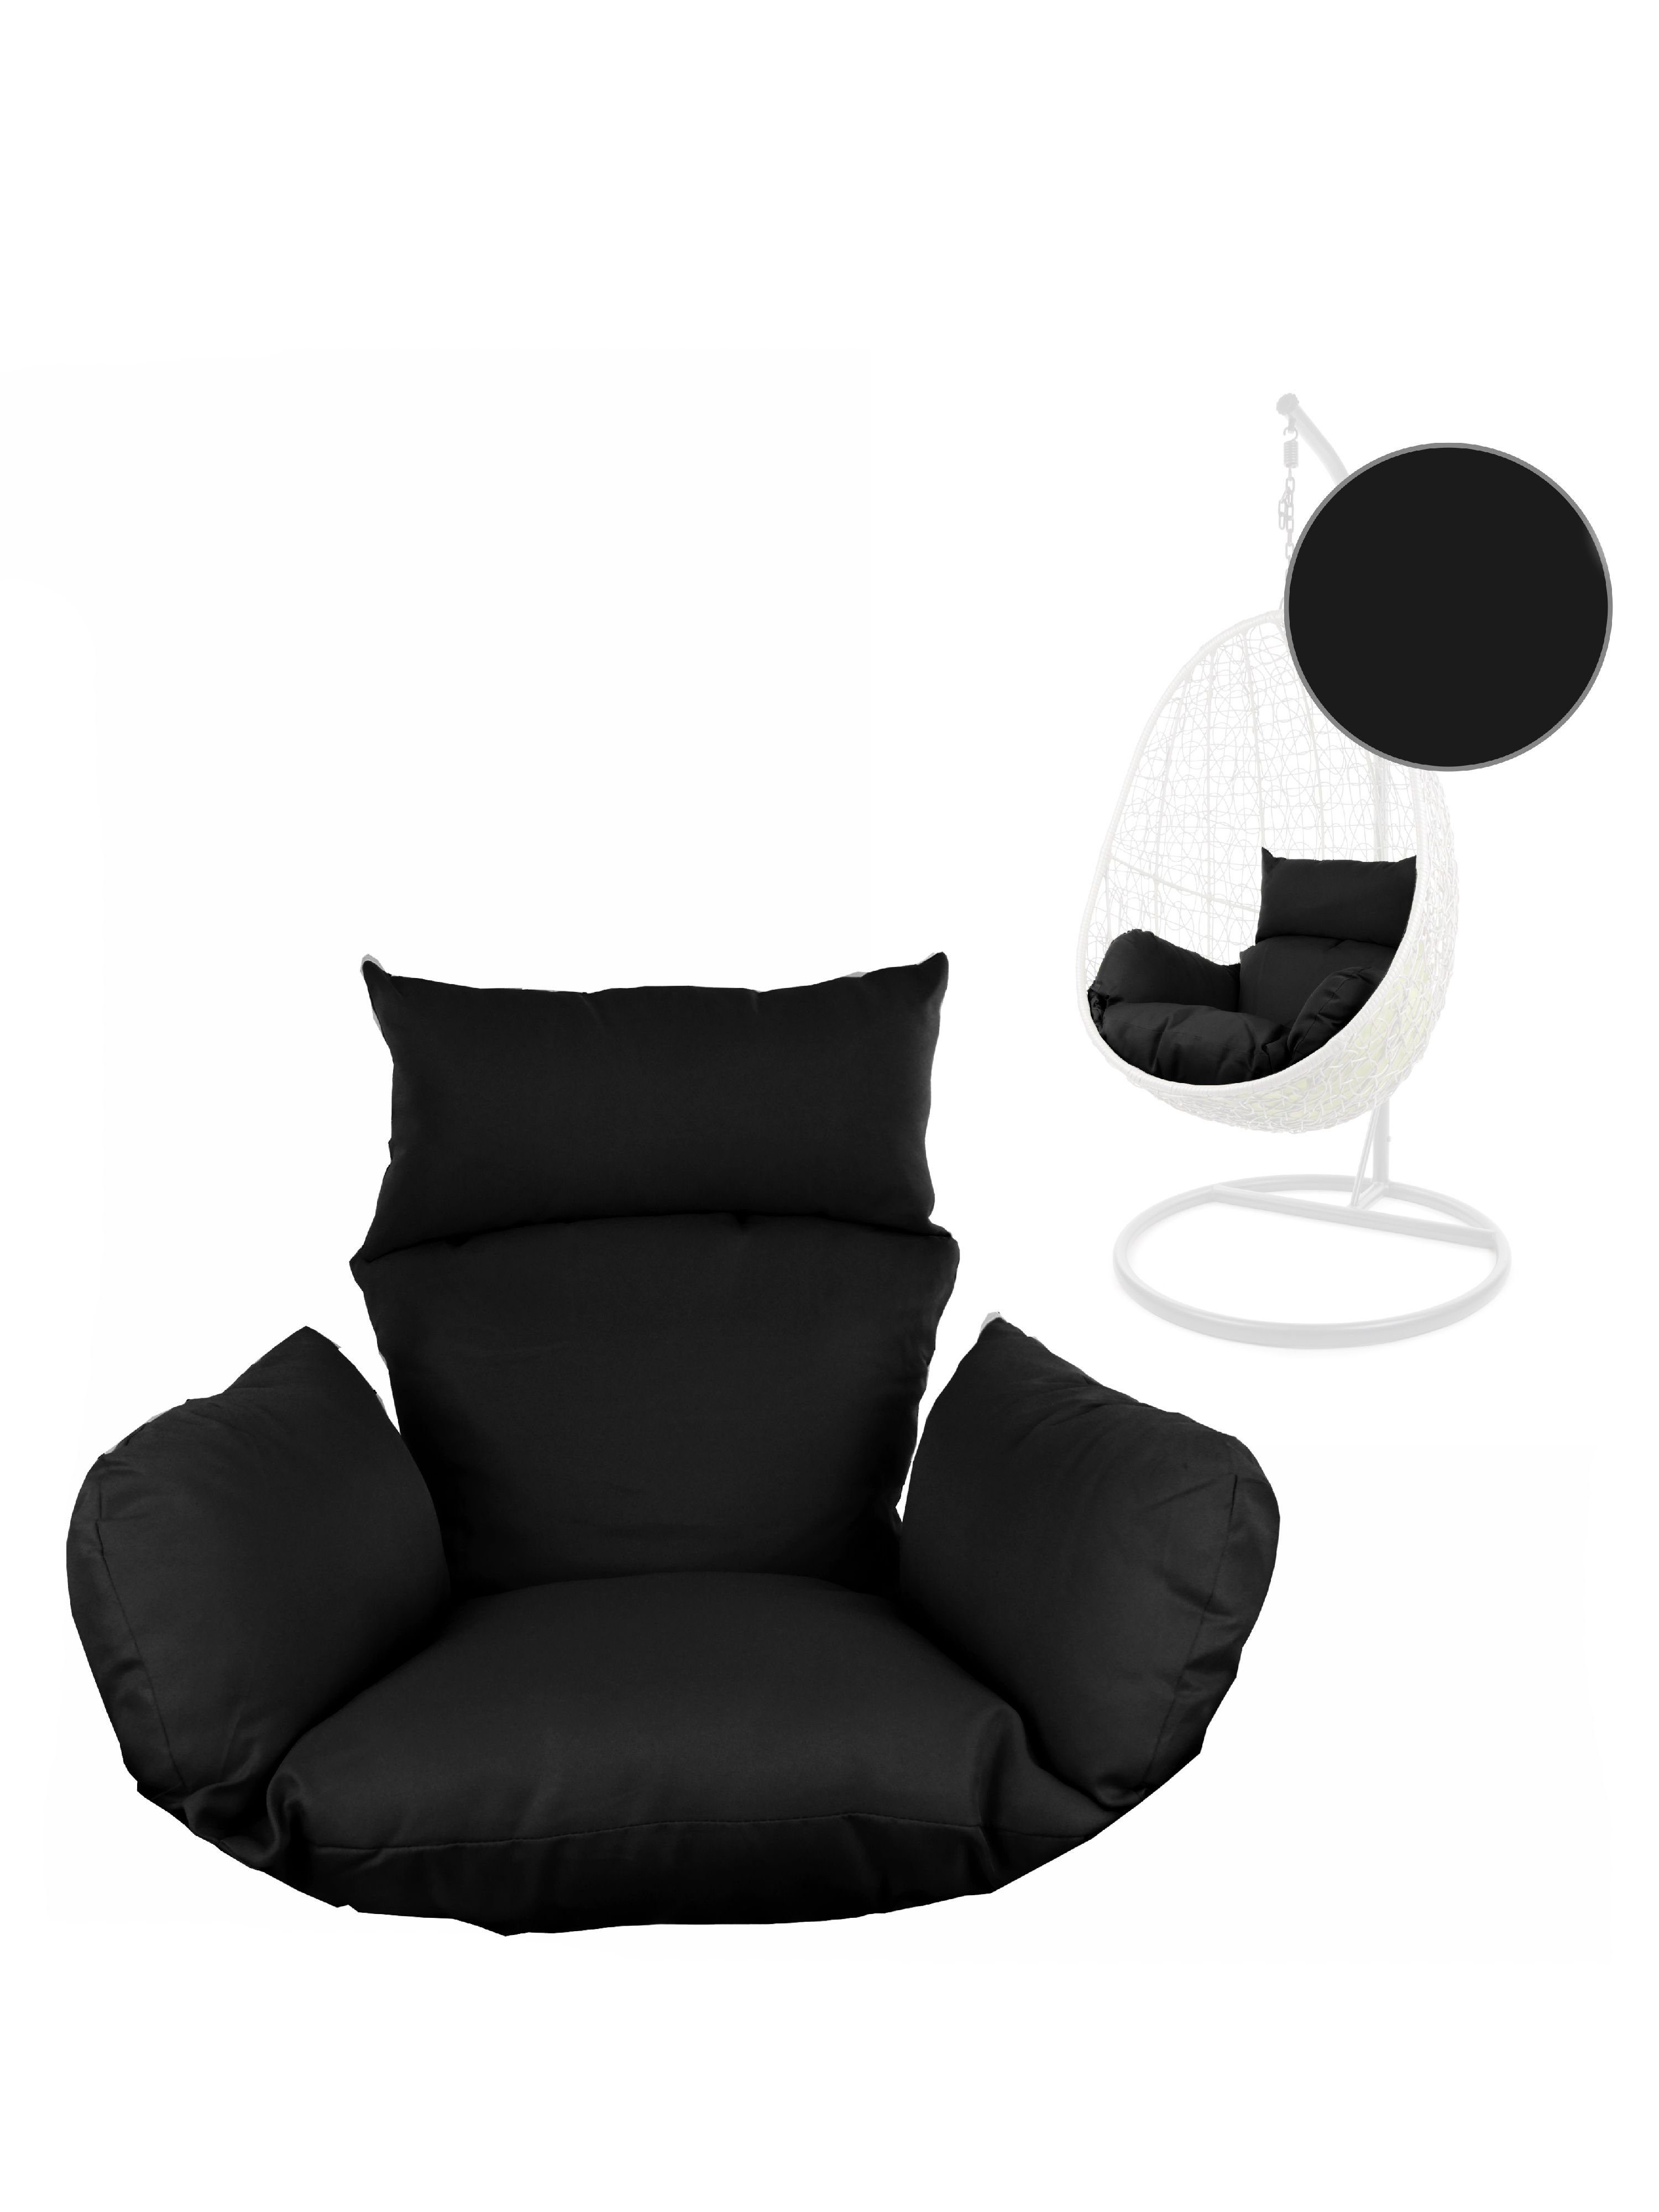 KIDEO Sitzkissen Hängesessel Zubehör, Nestkissen, Nest-Kissen black) Sitzkissen, für Hängesessel, (9999 St), schwarz verschiedene Polsterauflagen Farben, (1